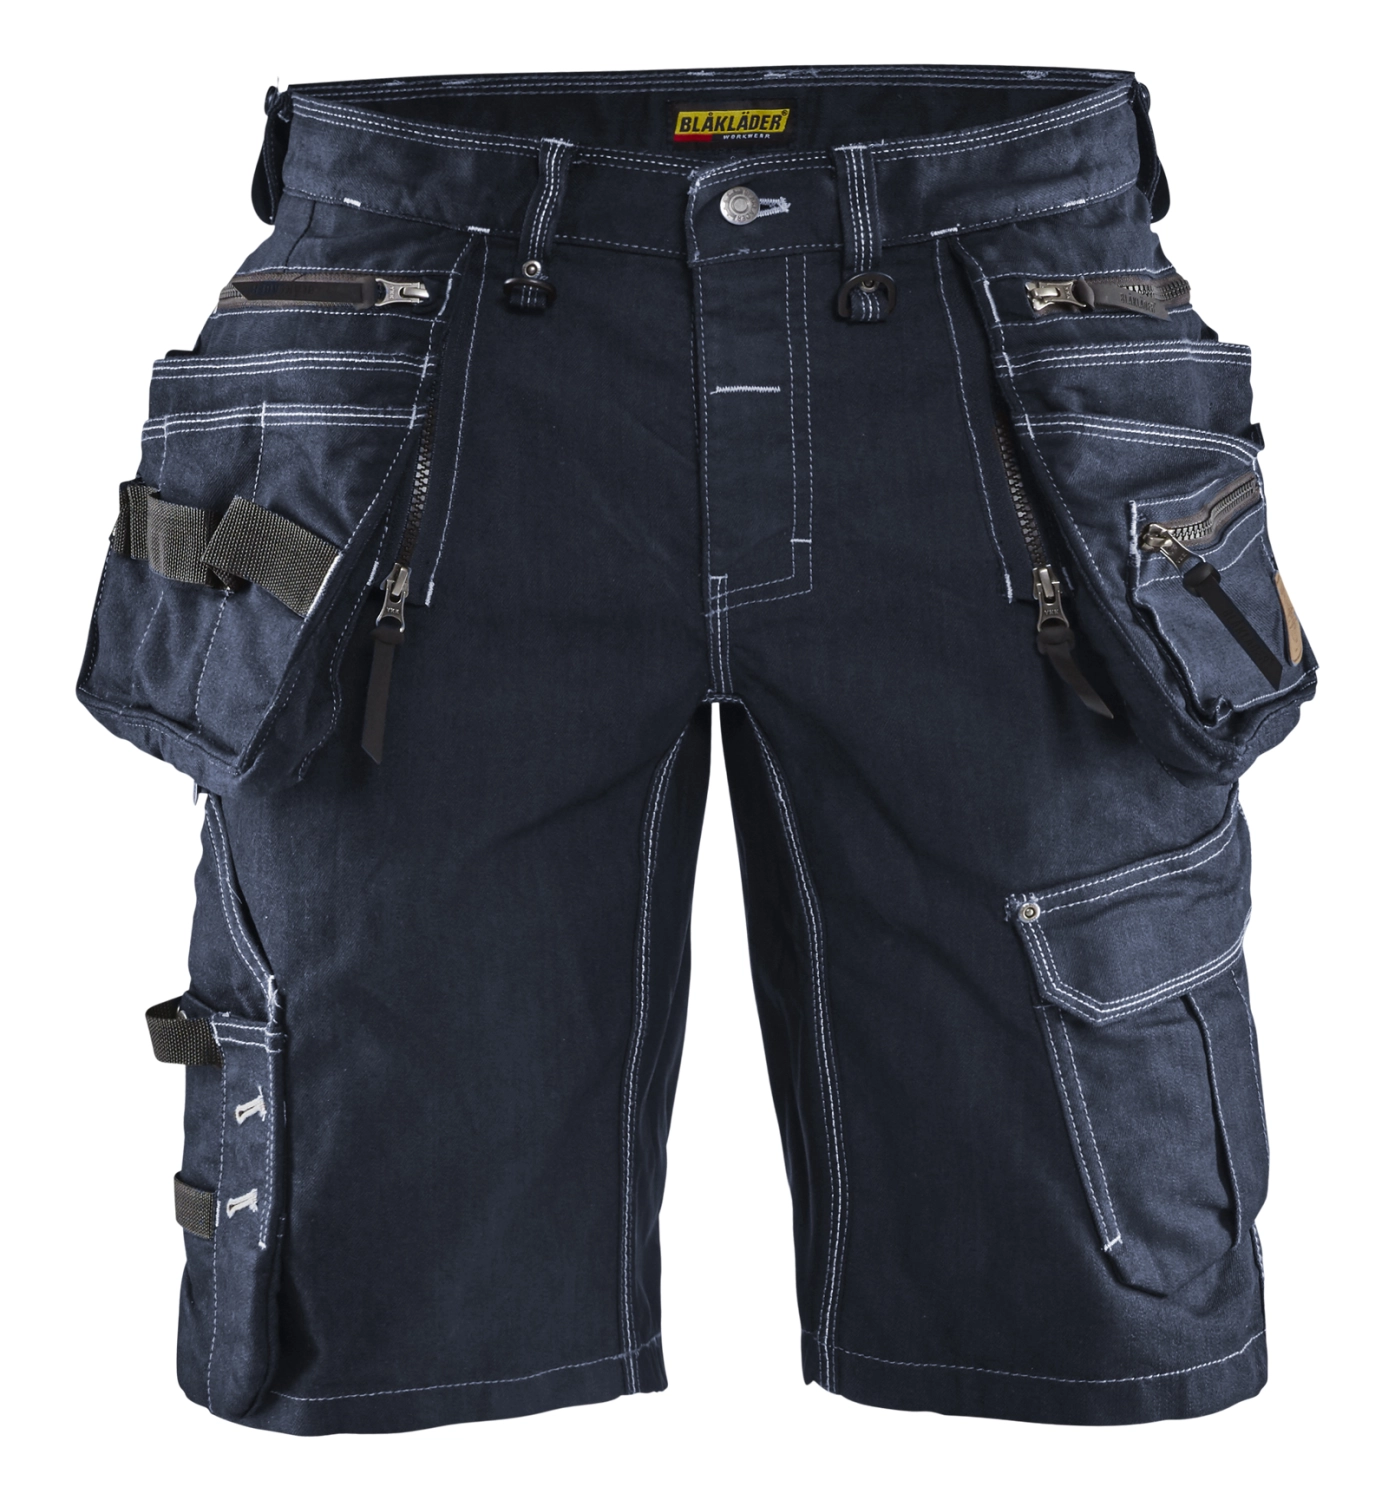 Blåkläder Short X1900 Pantalon de travail court Denim Stretch 1992 - bleu marine - taille 48 (M)-image